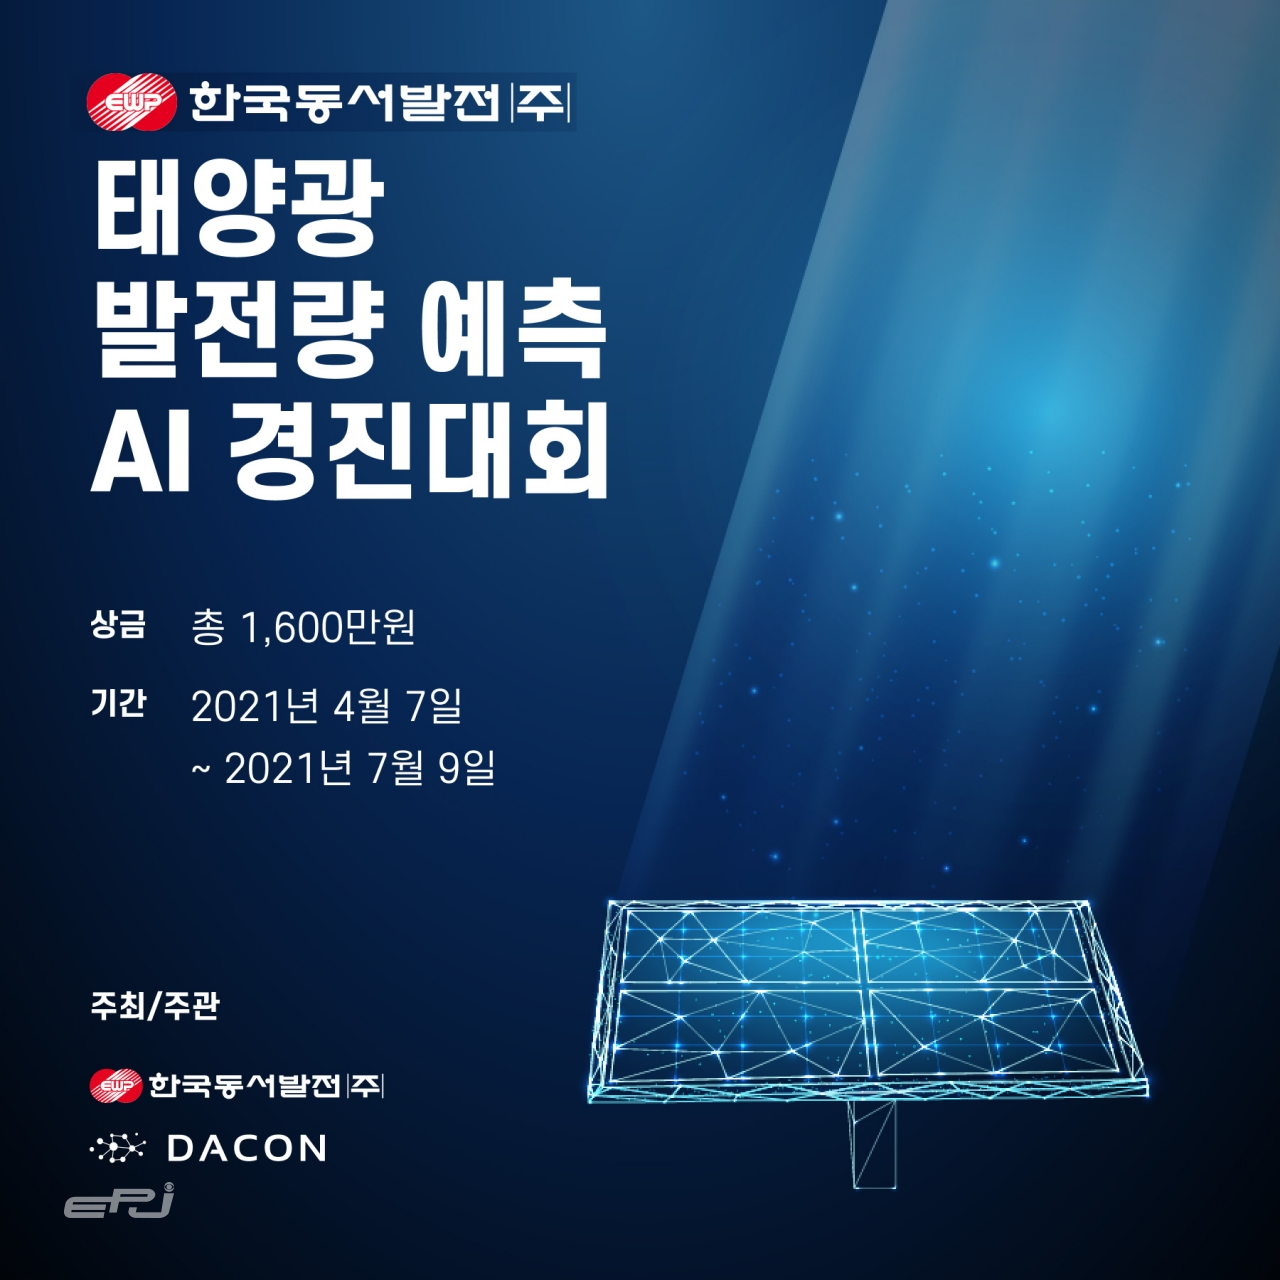 한국동서발전이 개최하는 ‘태양광 발전량 예측 인공지능(AI) 경진대회’ 포스터